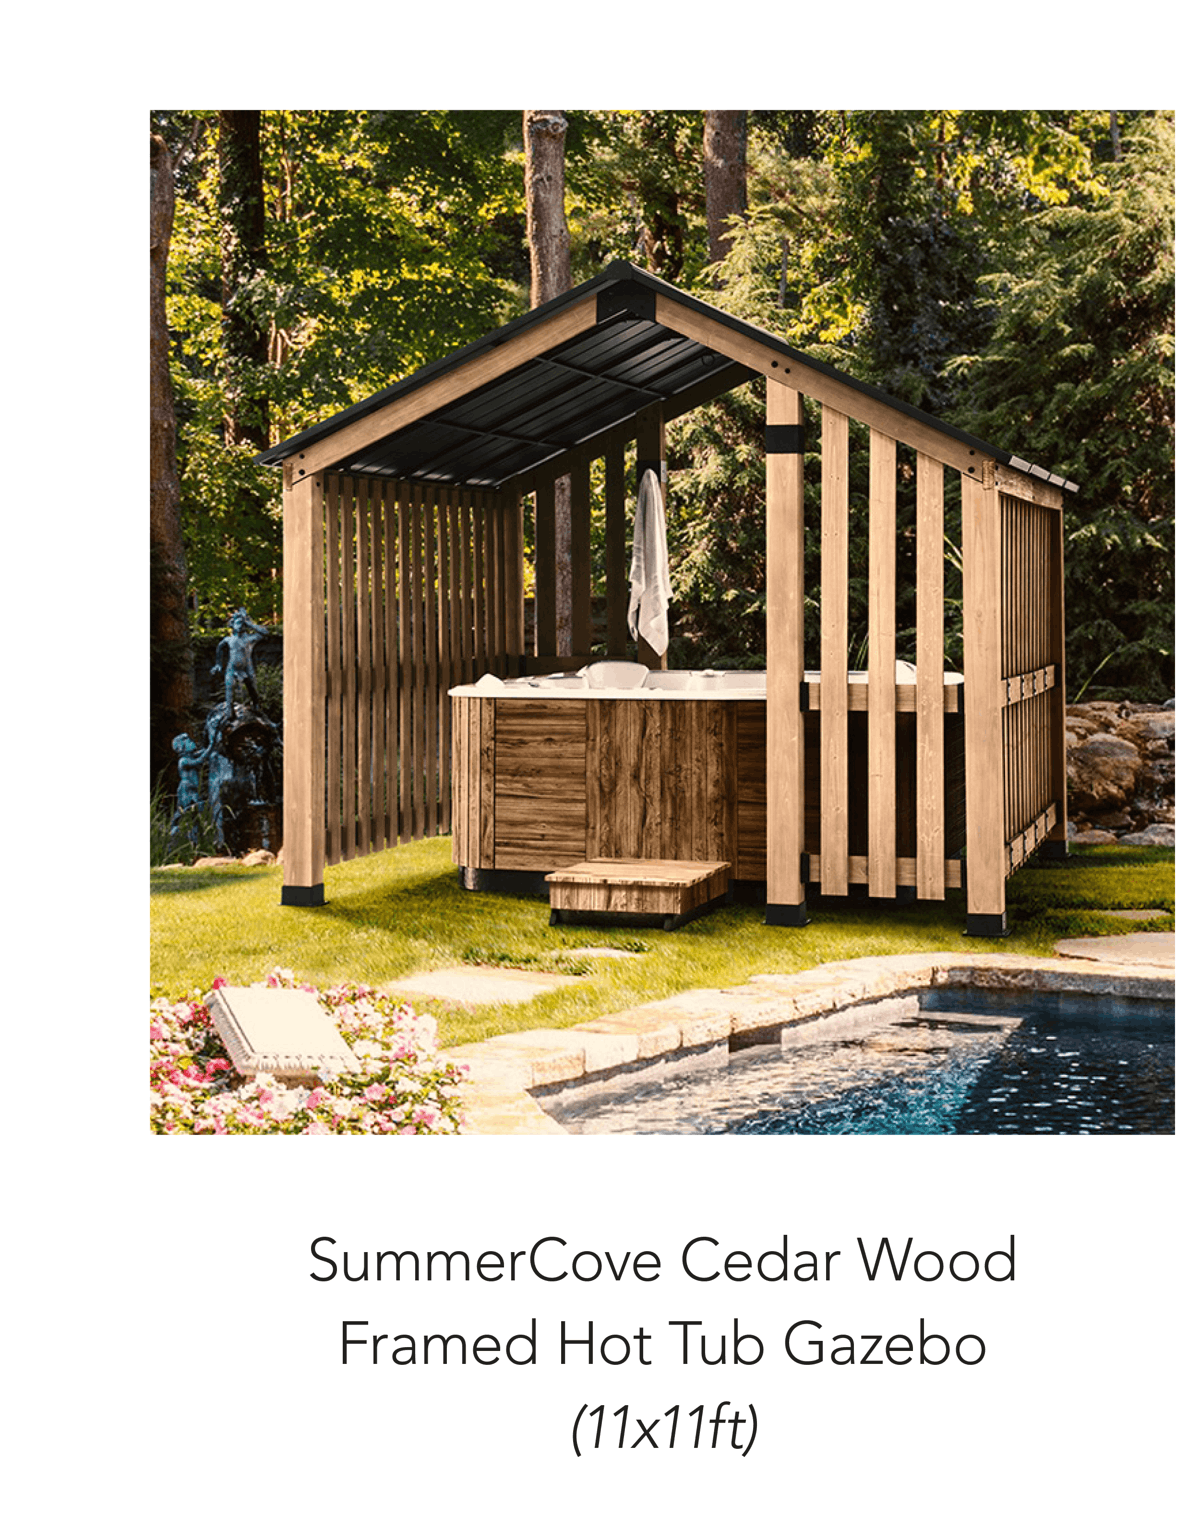 SummerCove Cedar Wood Framed Hot Tub Gazebo